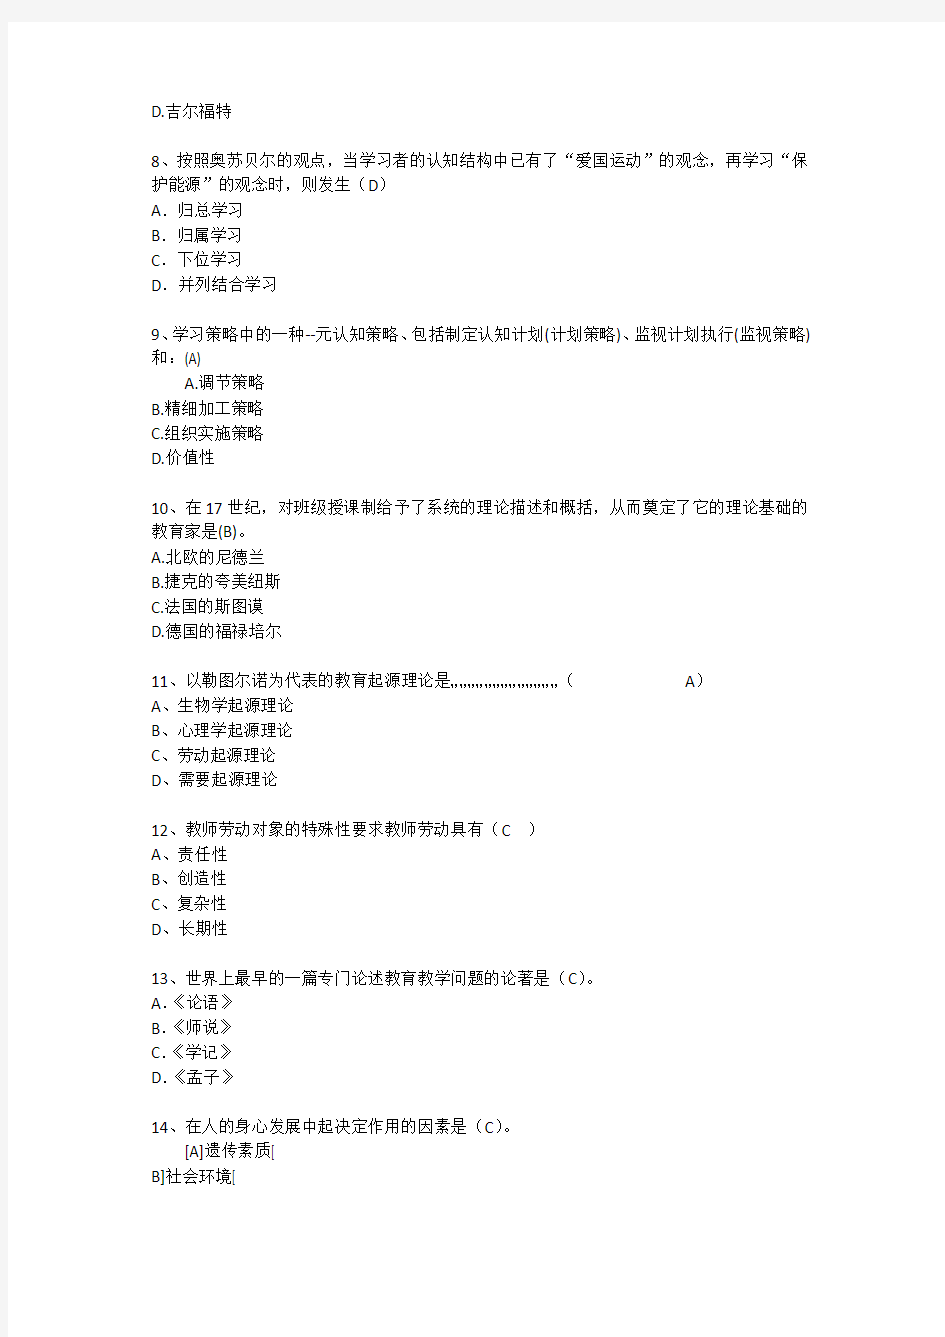 上海教育学心理学试题辅导每日一练(2015.7.13)